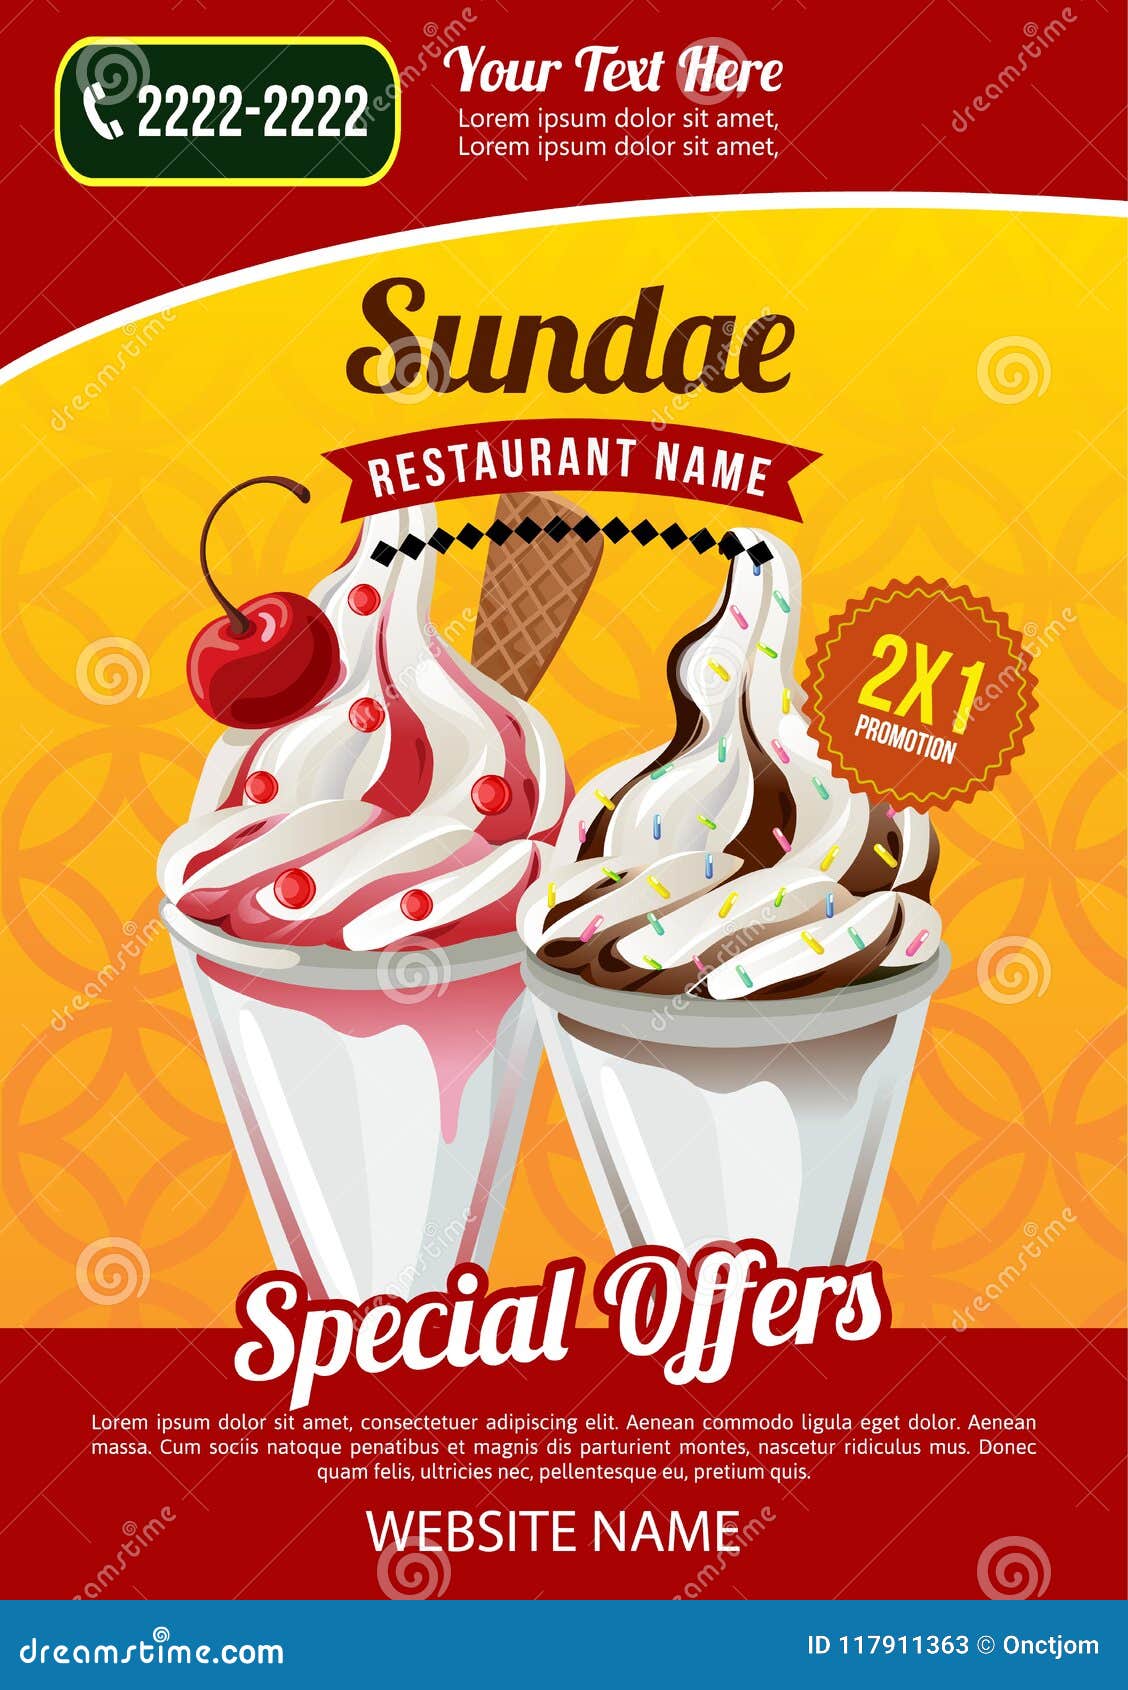 Sundae Ice Cream Restaurant Promotional Template Stock Vector Illustration Of Sundae Pancake